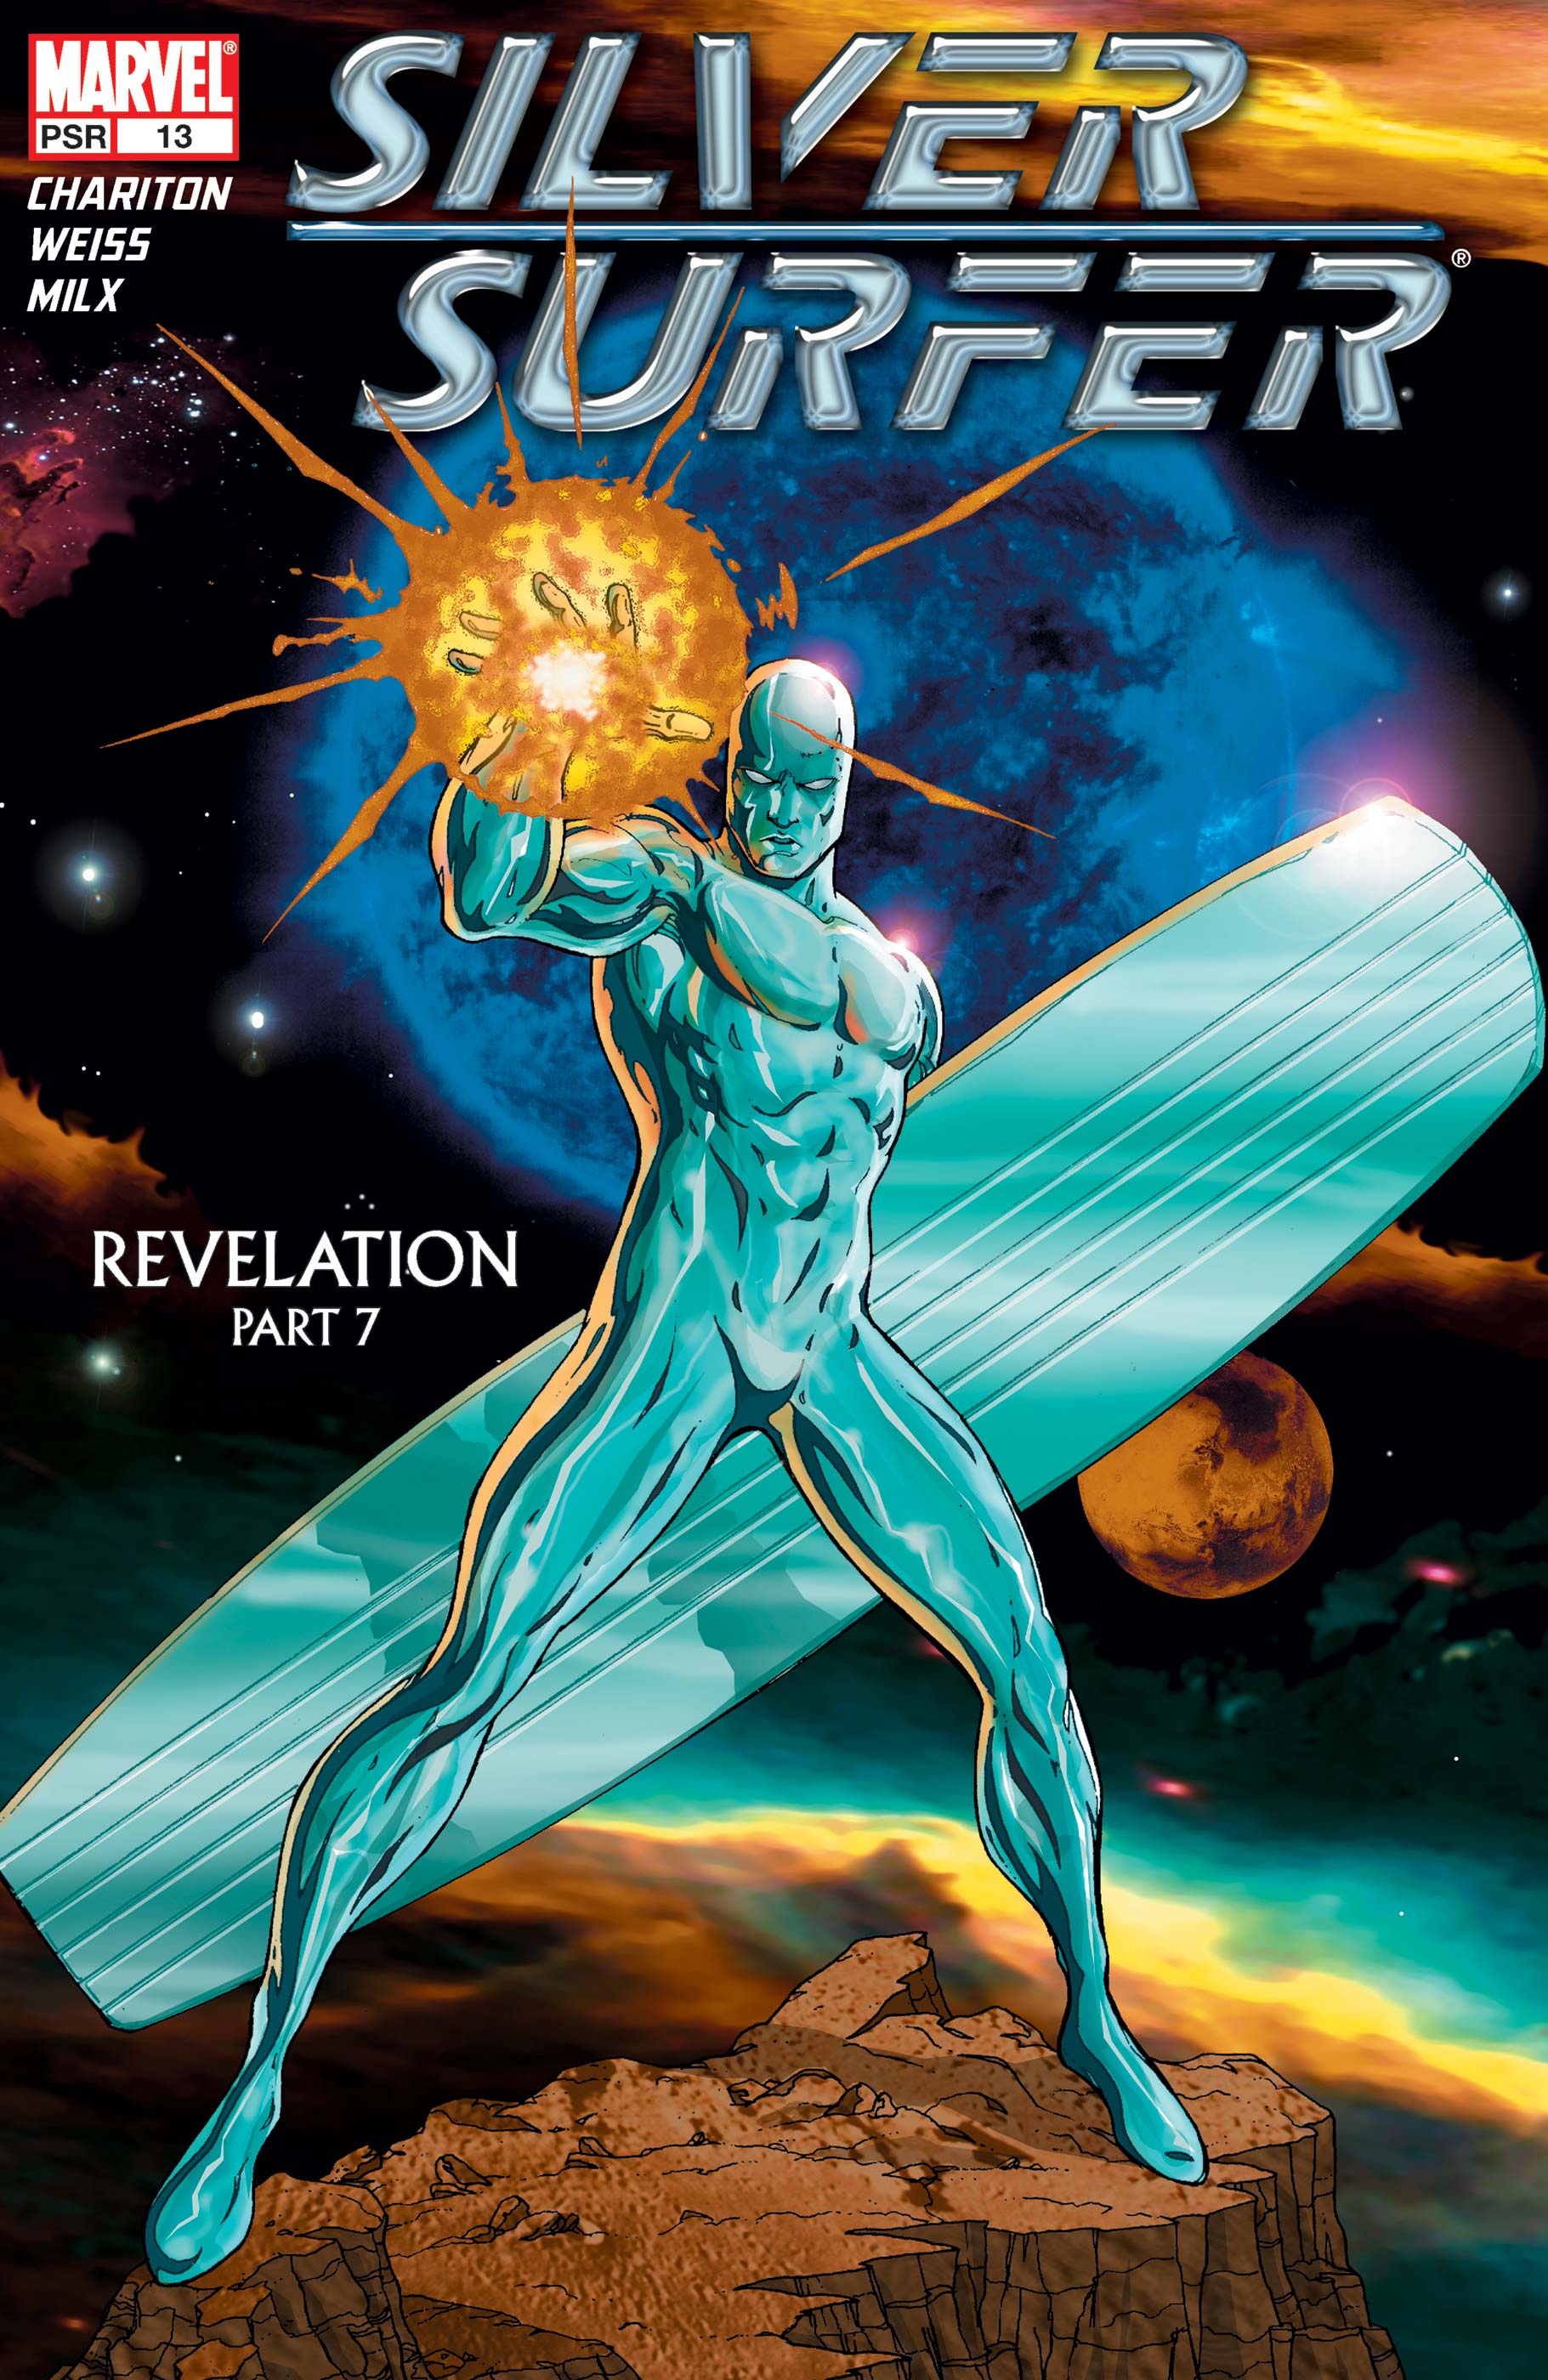 2 Reprints 7 8 9 10 11 12 13 Marvel Masterwork Comics TPB New Silver Surfer Vol